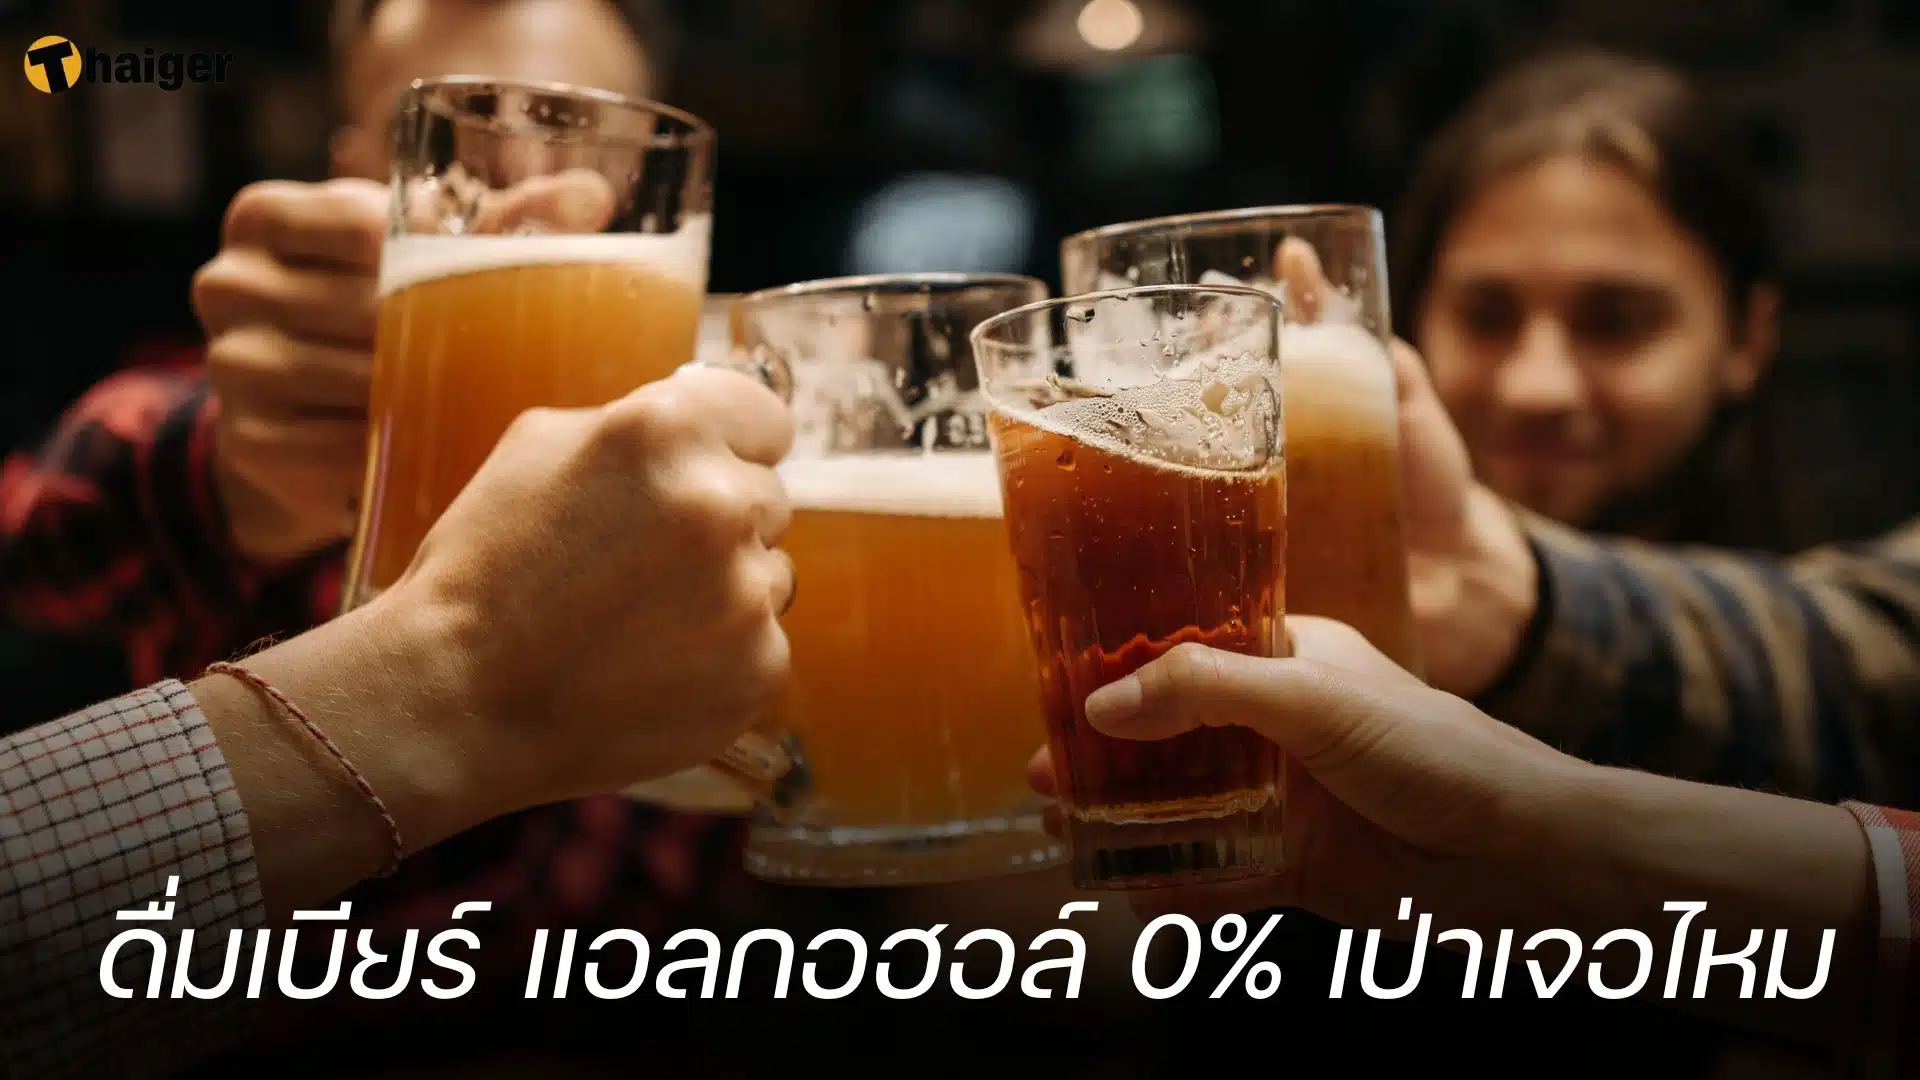 ดื่มเบียร์ แอลกอฮอล์ 0% เป่าเจอไหม